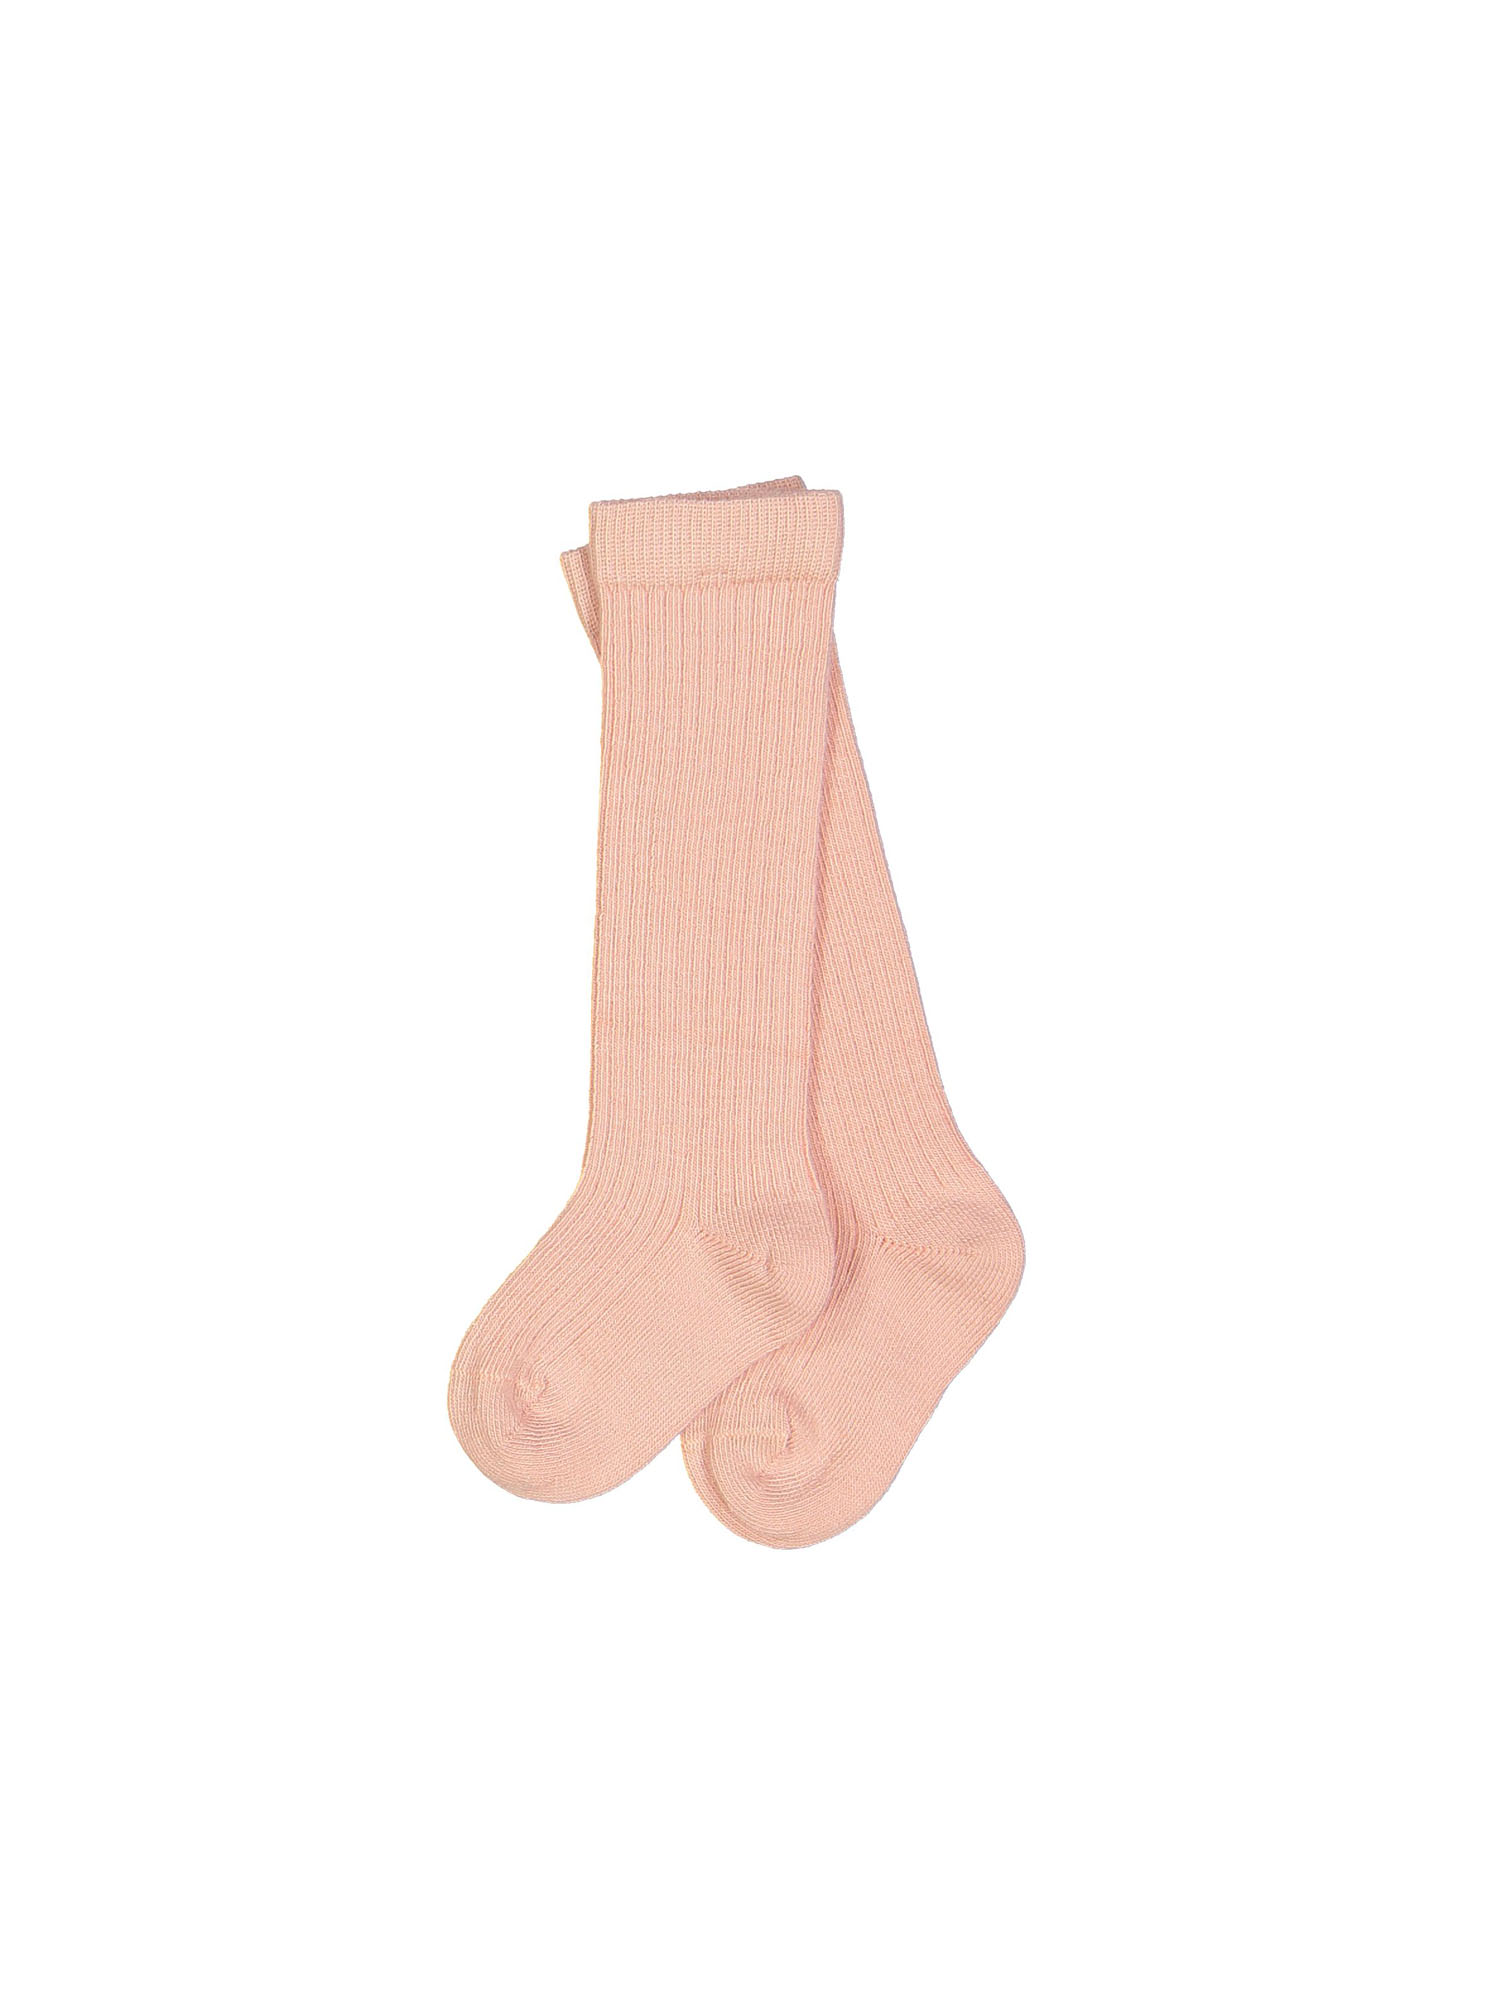 knee socks light pink